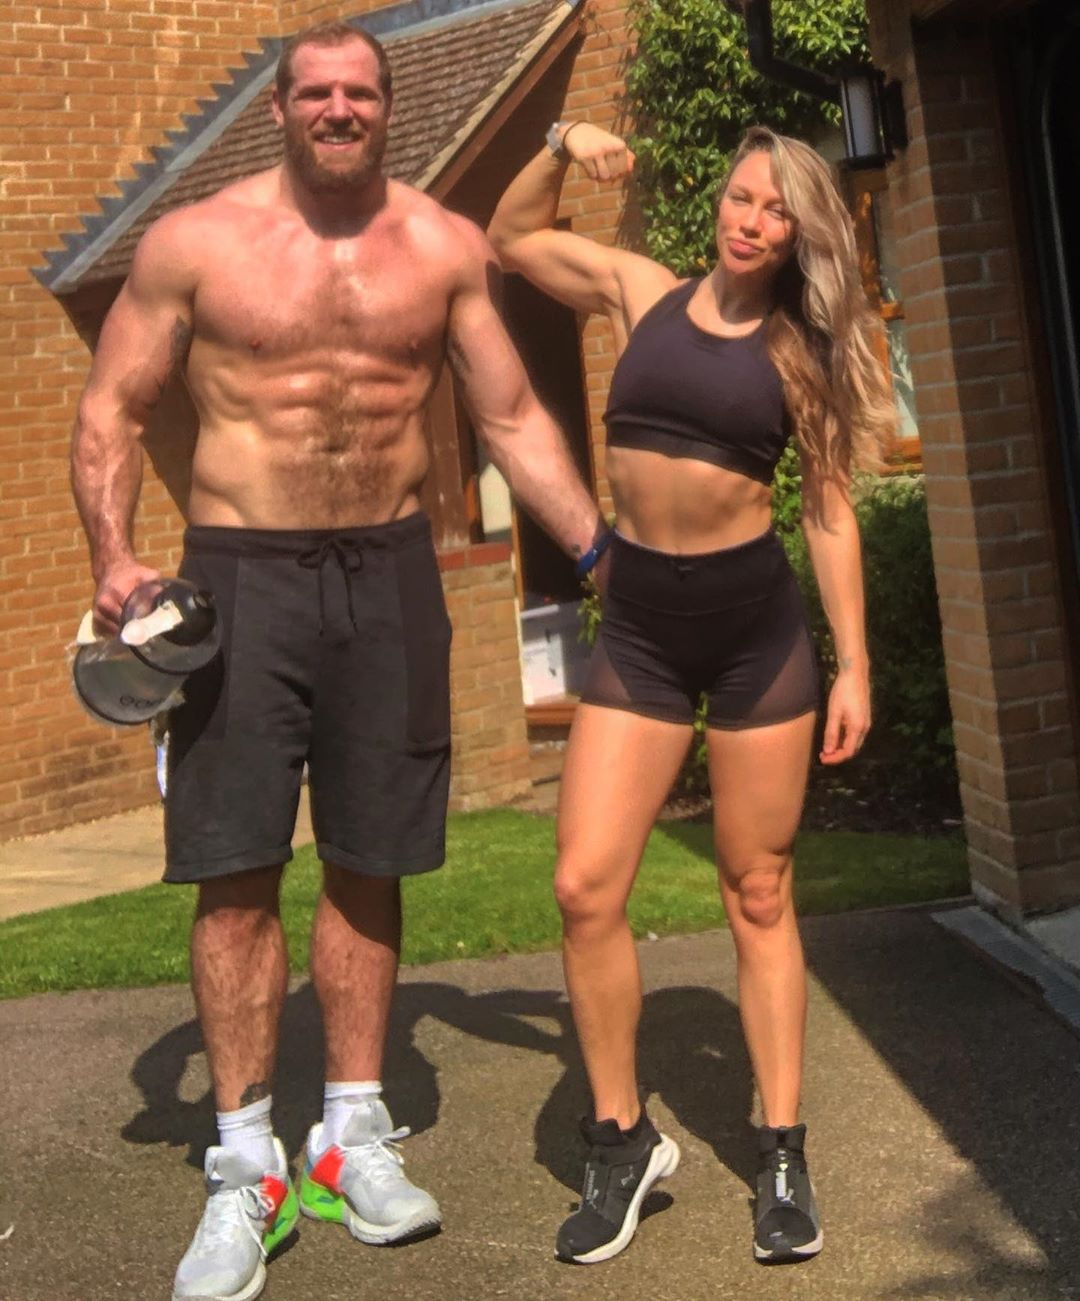 Chloe und ihr Mann, der ehemalige Rugby-Star James Haskell, trainieren zusammen